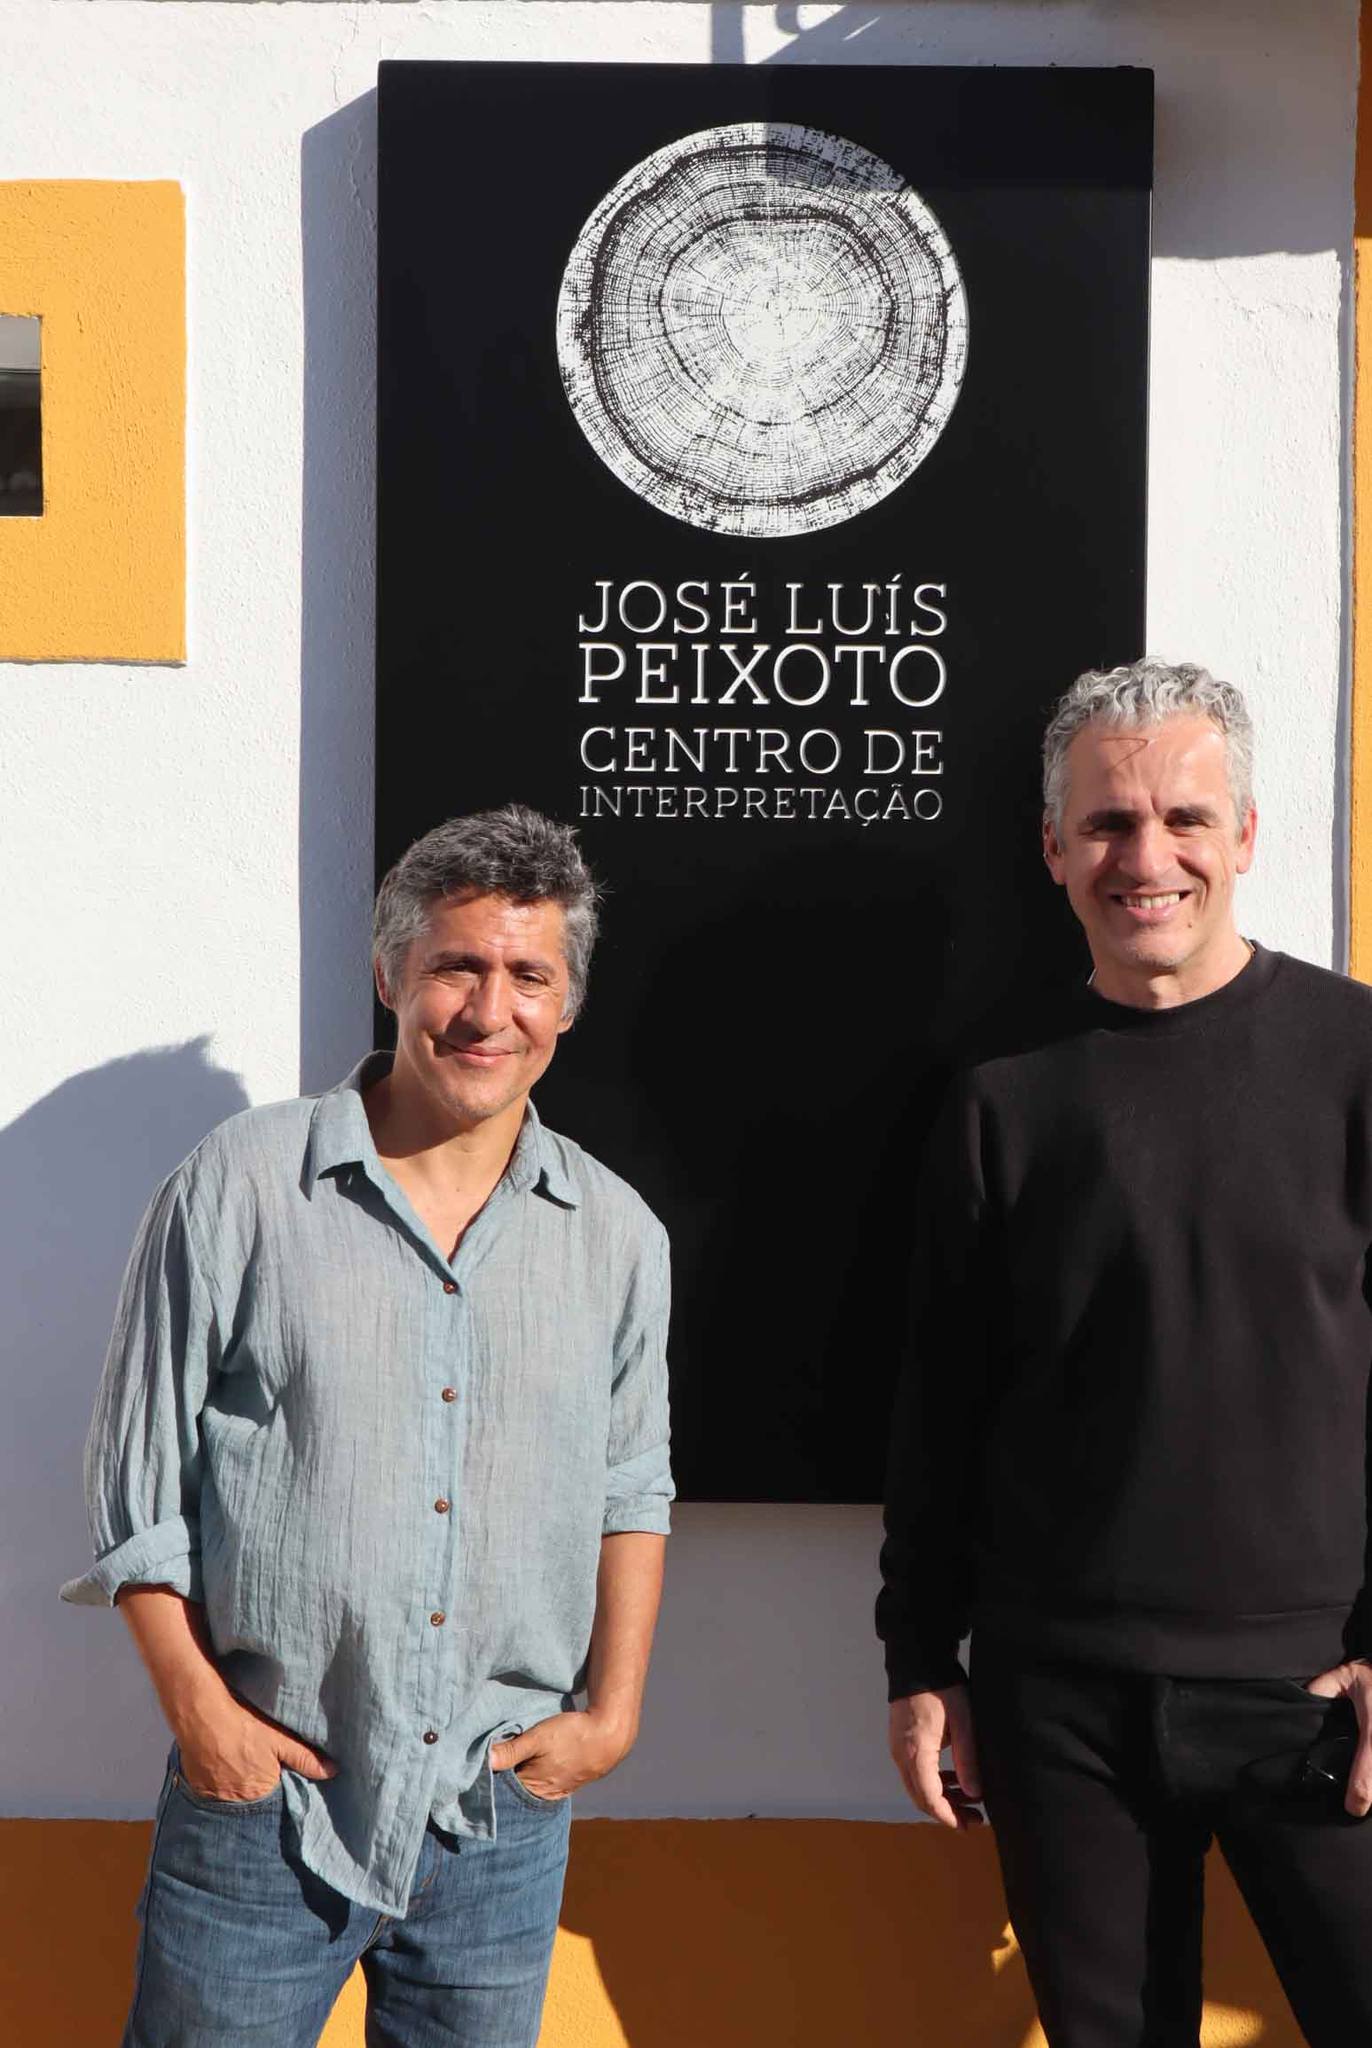 Visita Guiada ao Centro de Interpretação José Luís Peixoto